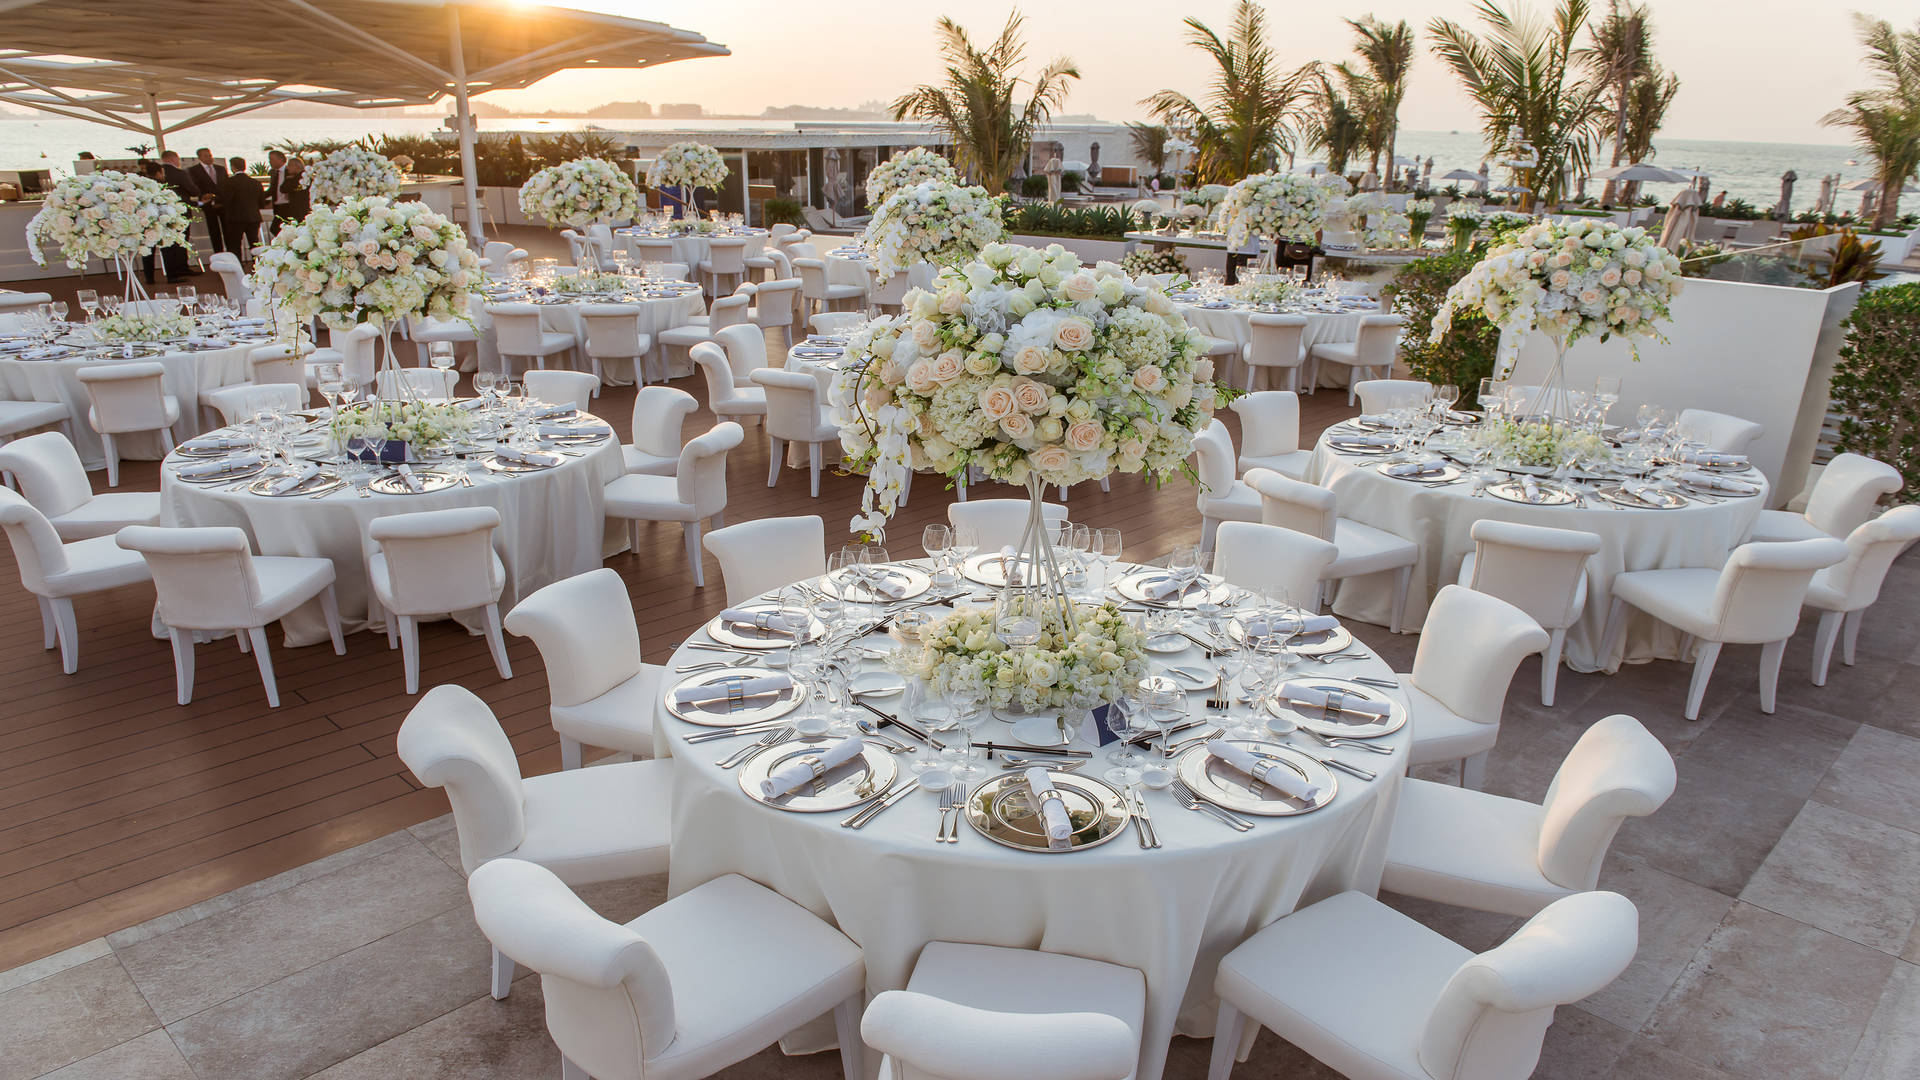 Centre piece flower arrangements for wedding at Burj Al Arab